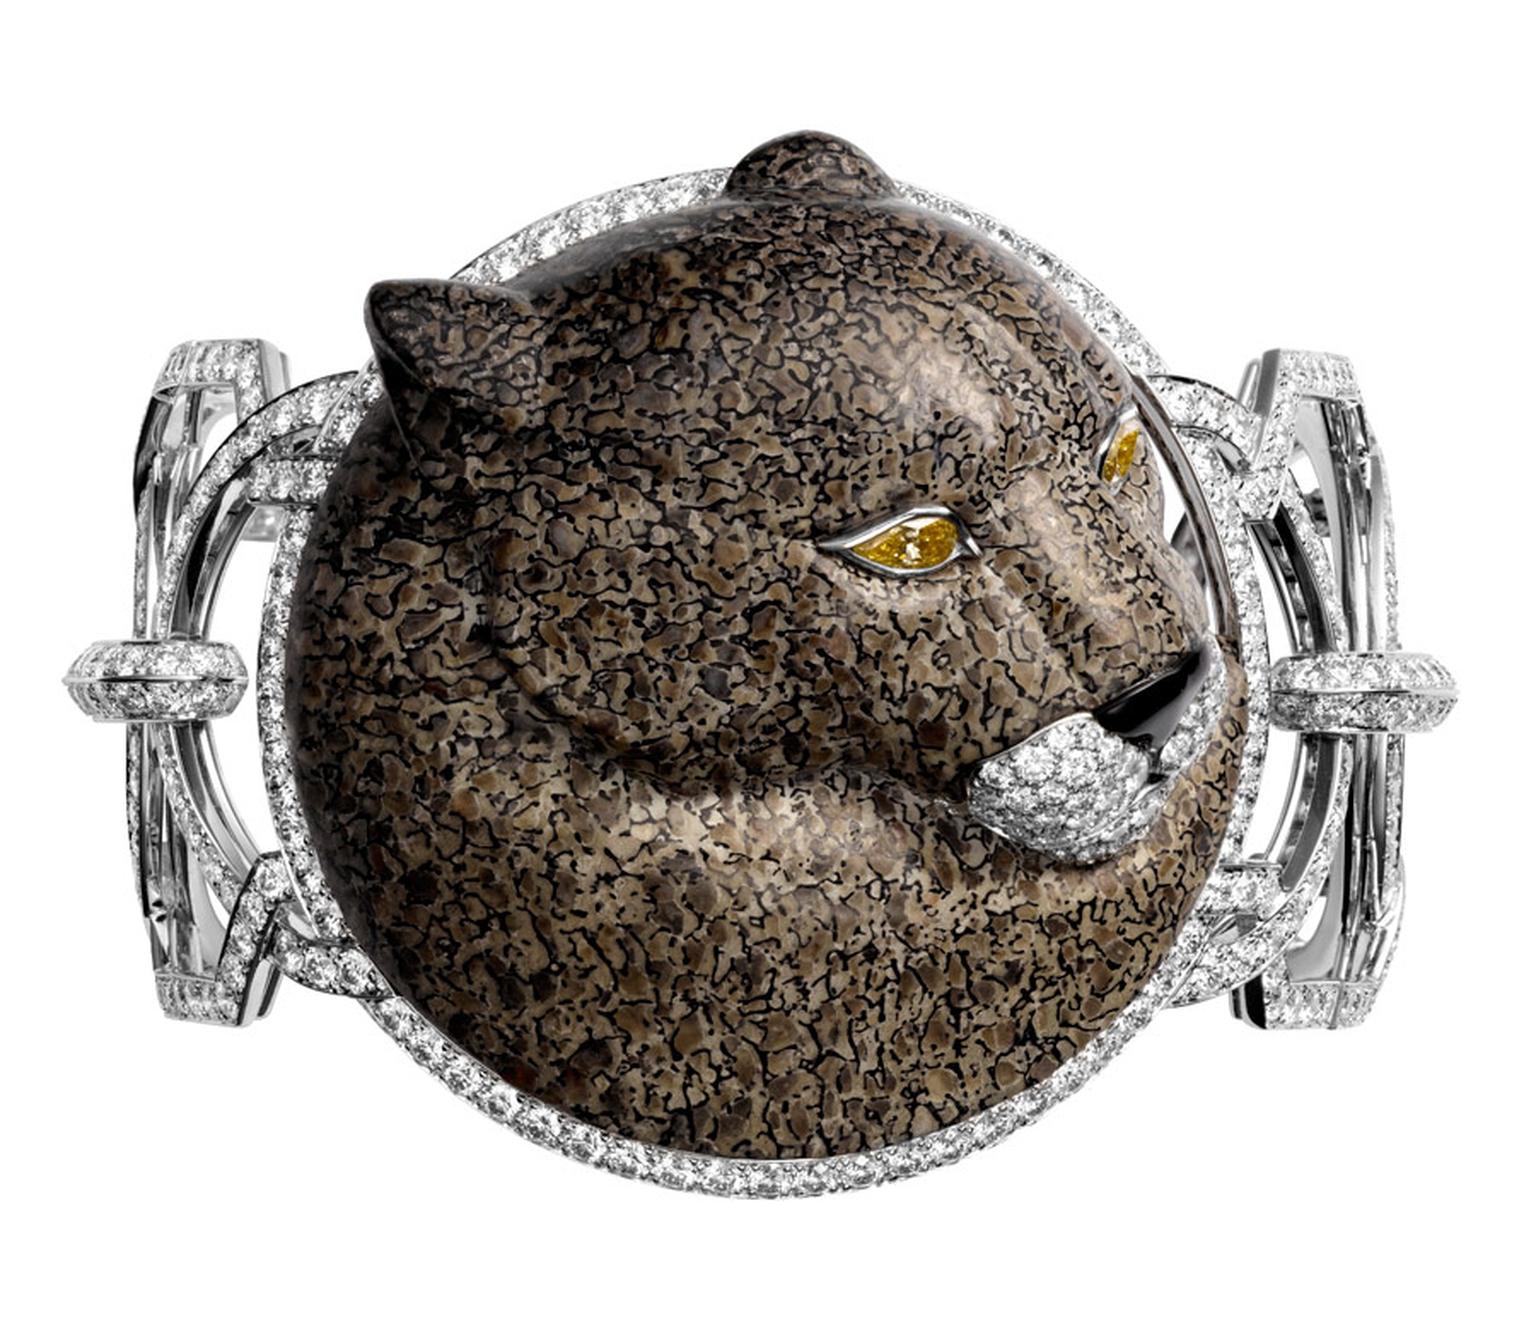 Cartier-Luxuriant-cuff